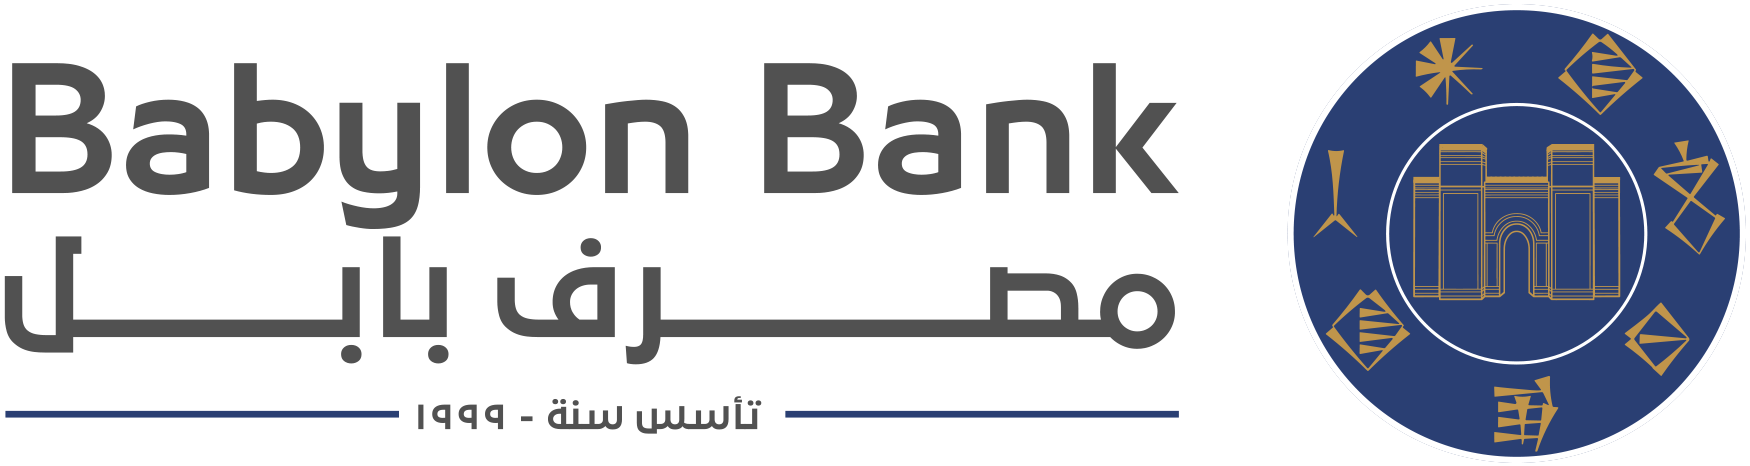 Babylon Bank